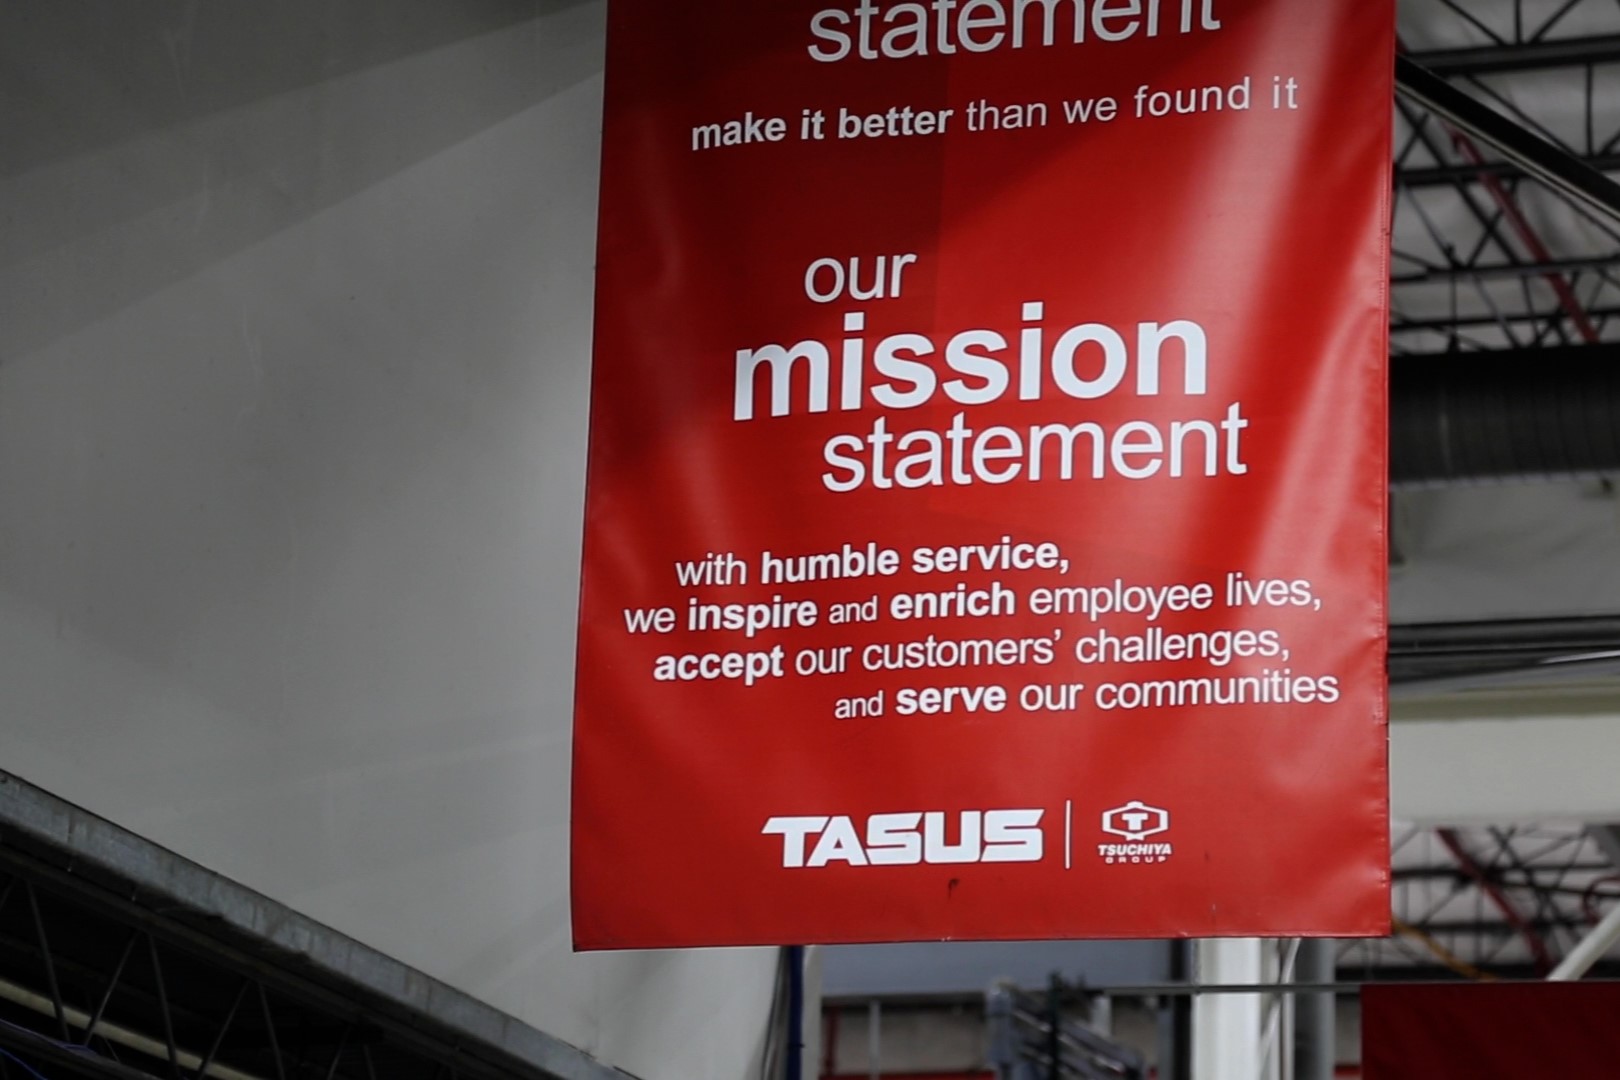 TASUS mission statement